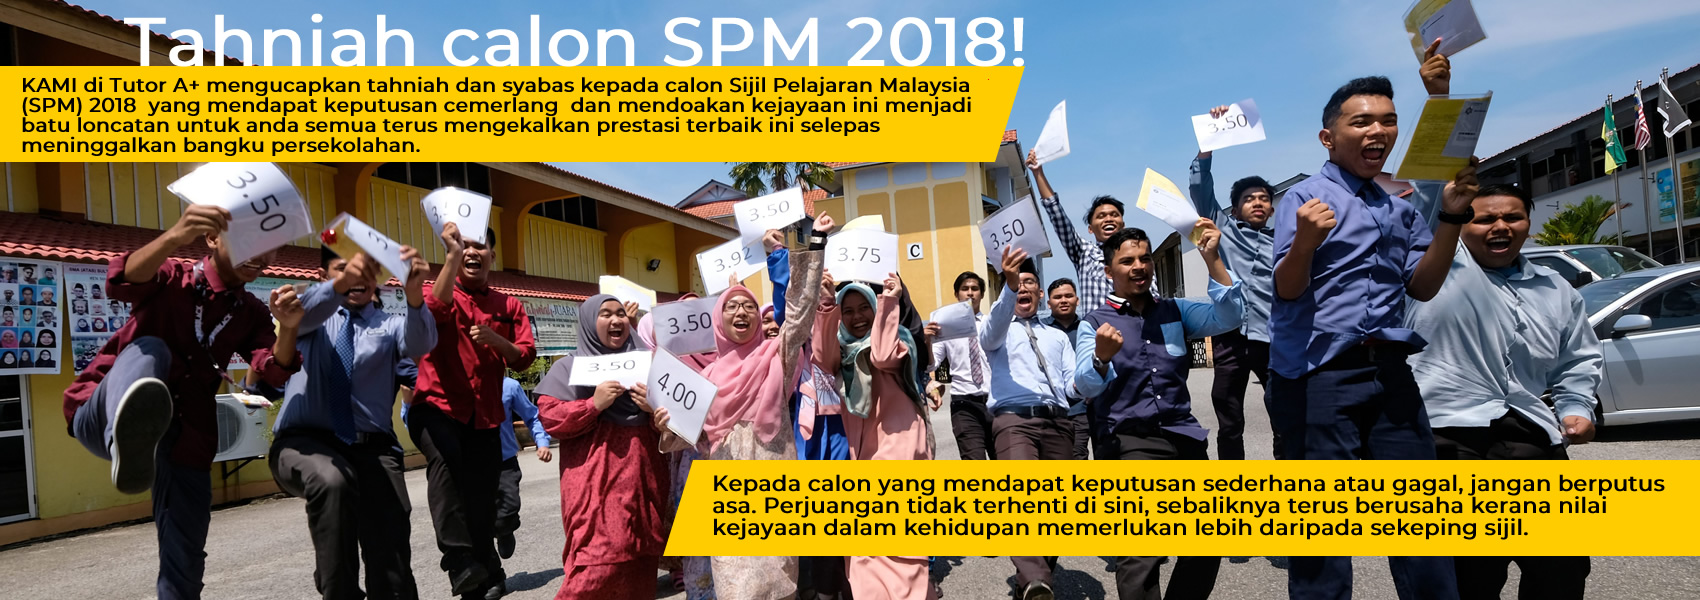 Soalan Percubaan Upsr 2019 Sains Kedah - Selangor u